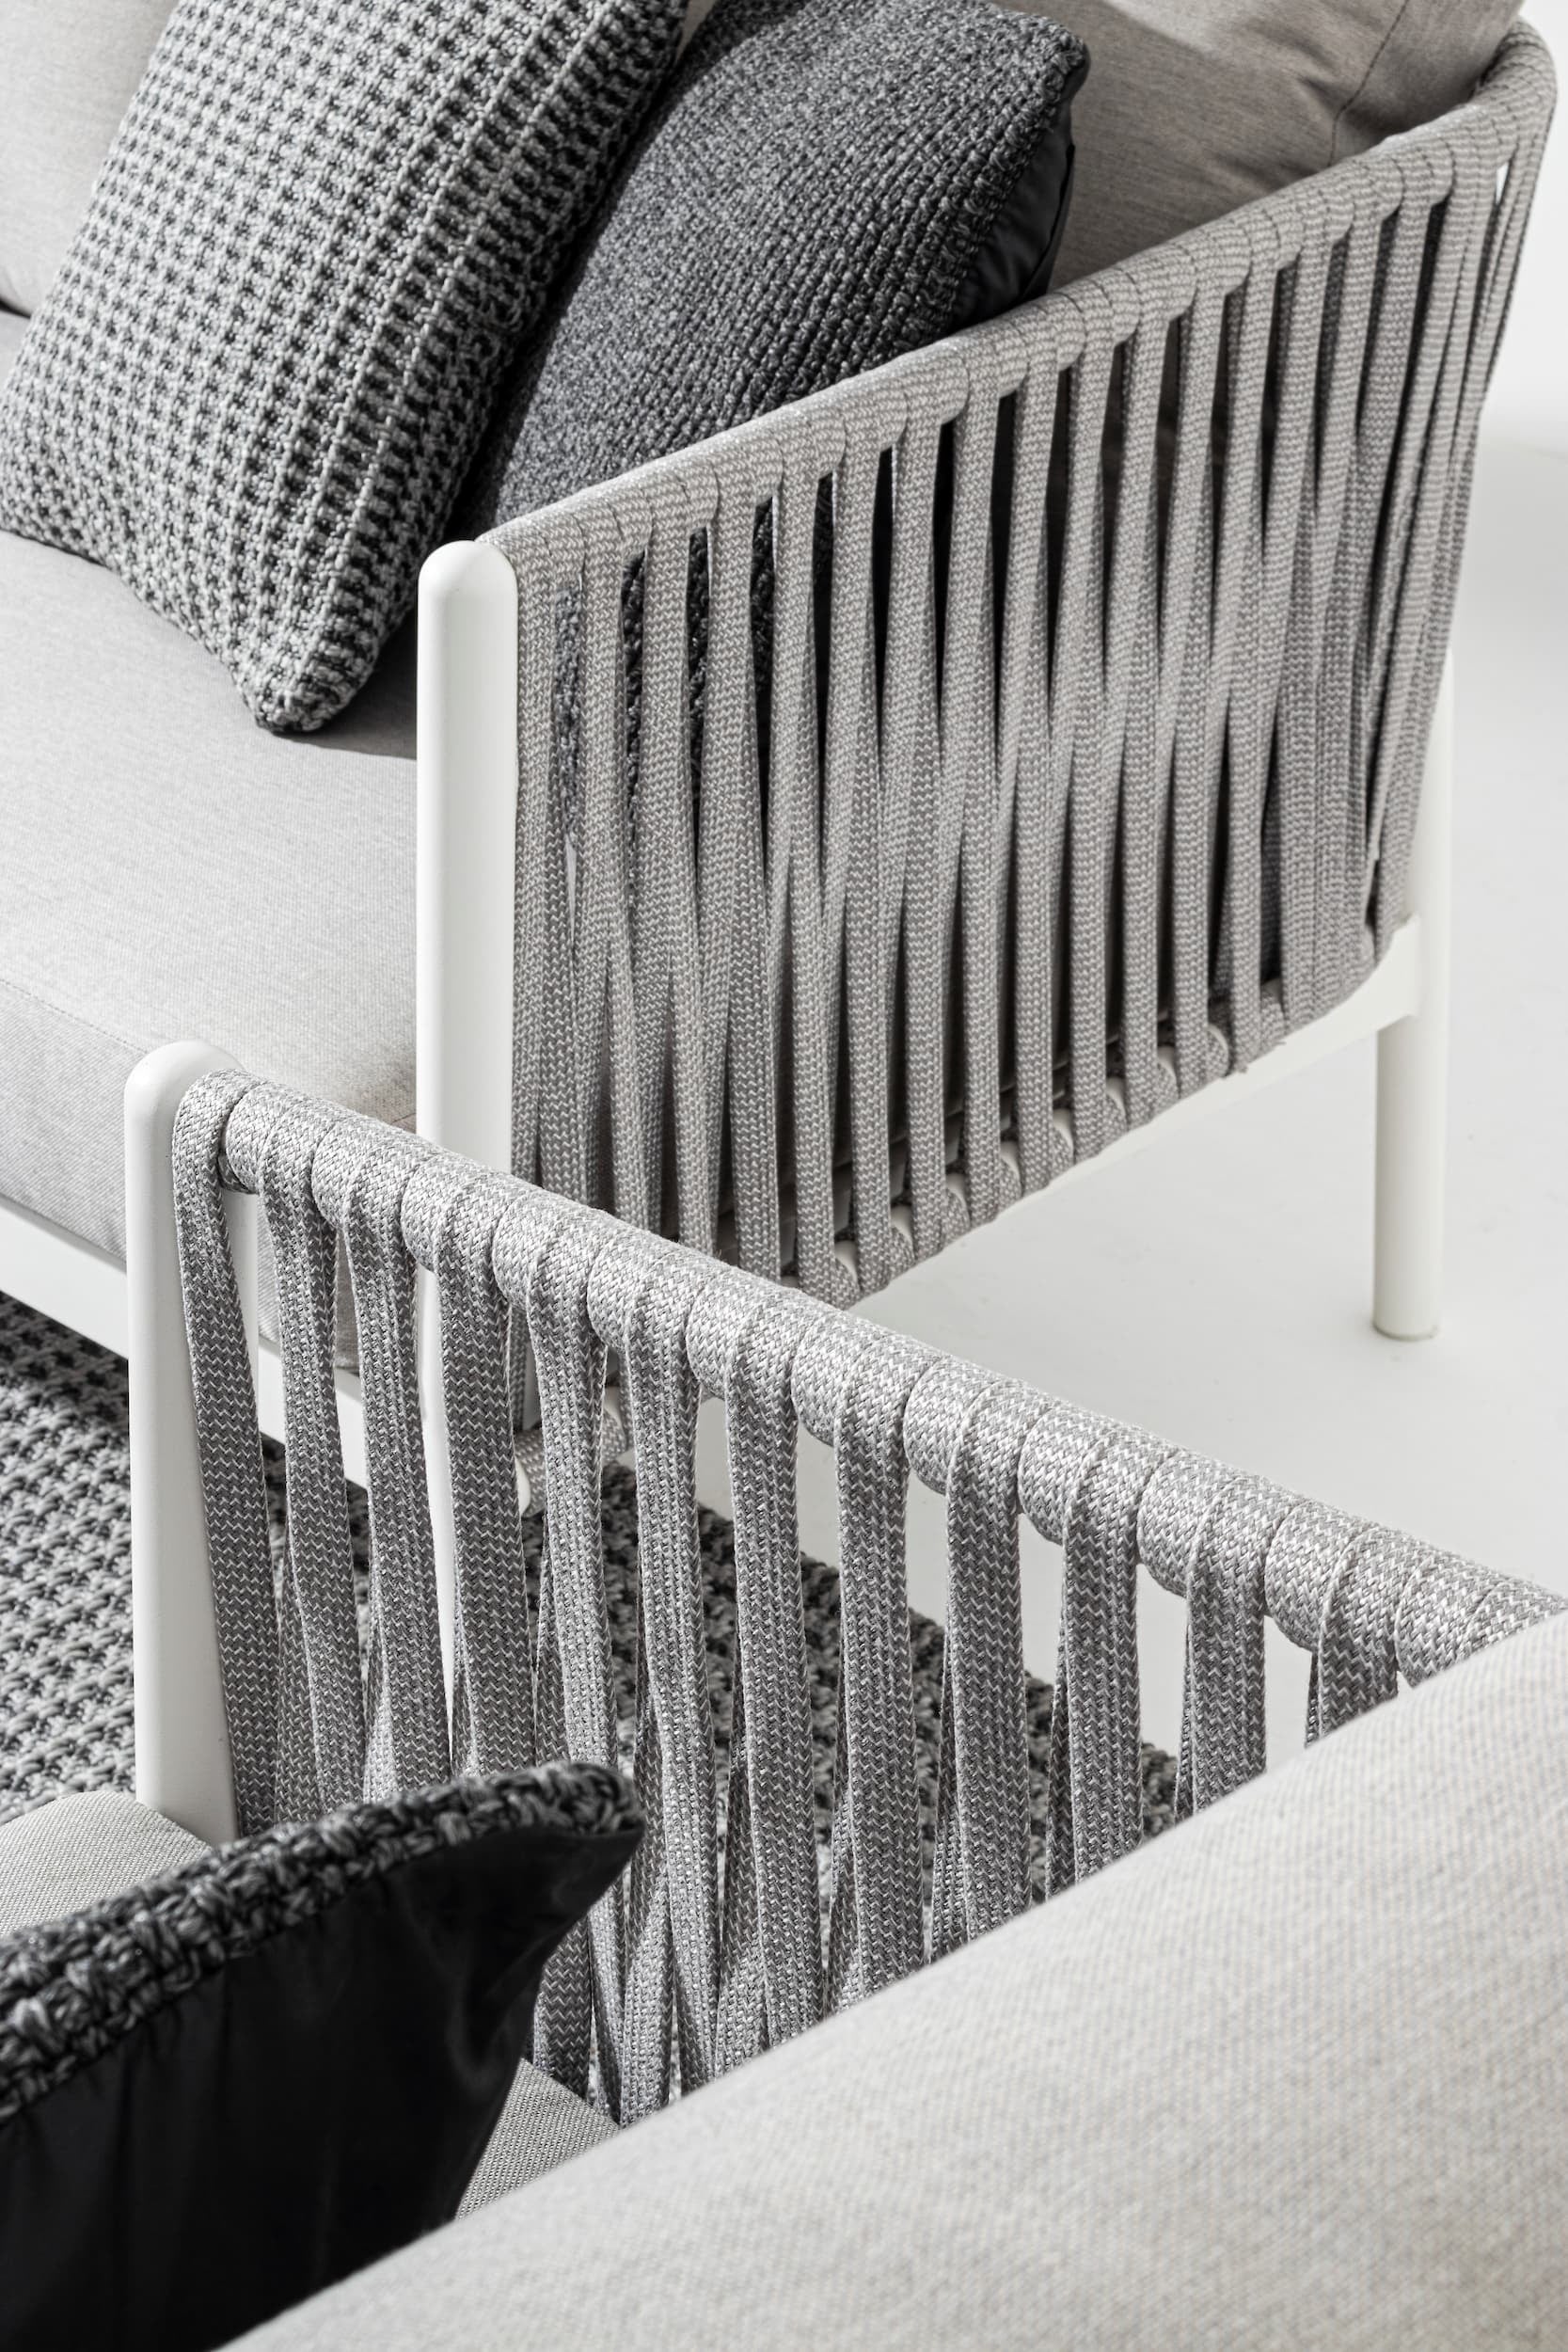 Bizzotto Canapea fixa pentru gradina / terasa, din aluminiu si material textil, 3 locuri, Florencia Gri / Alb, l220xA85xH86 cm